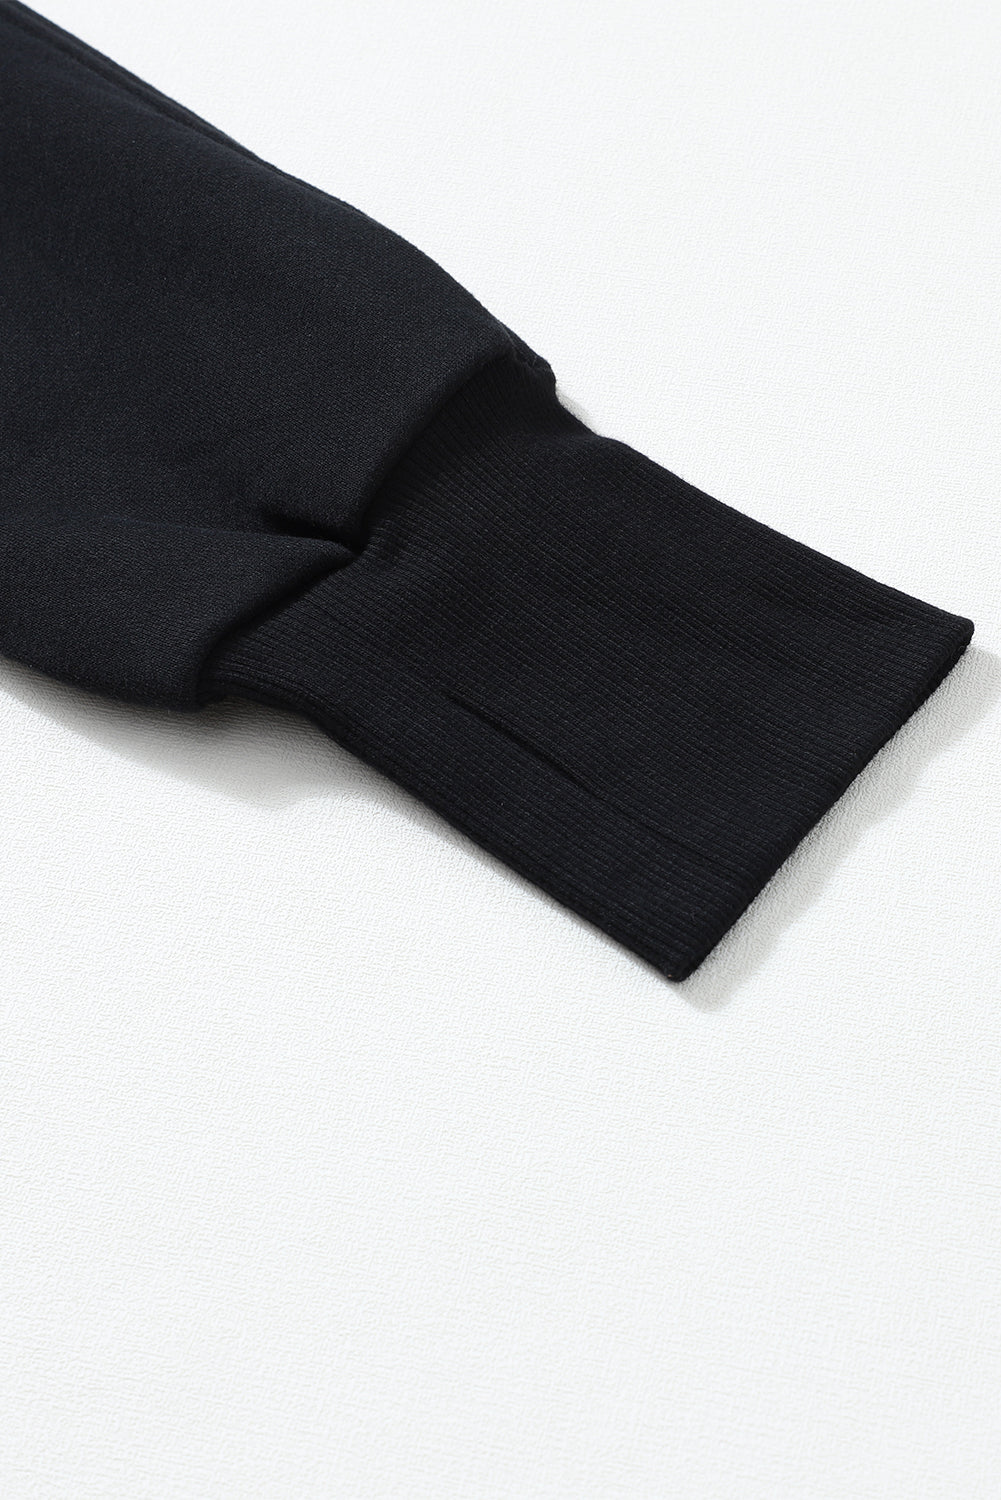 Črn pulover z zadrgo in stoječim ovratnikom z rebrastimi rokavi